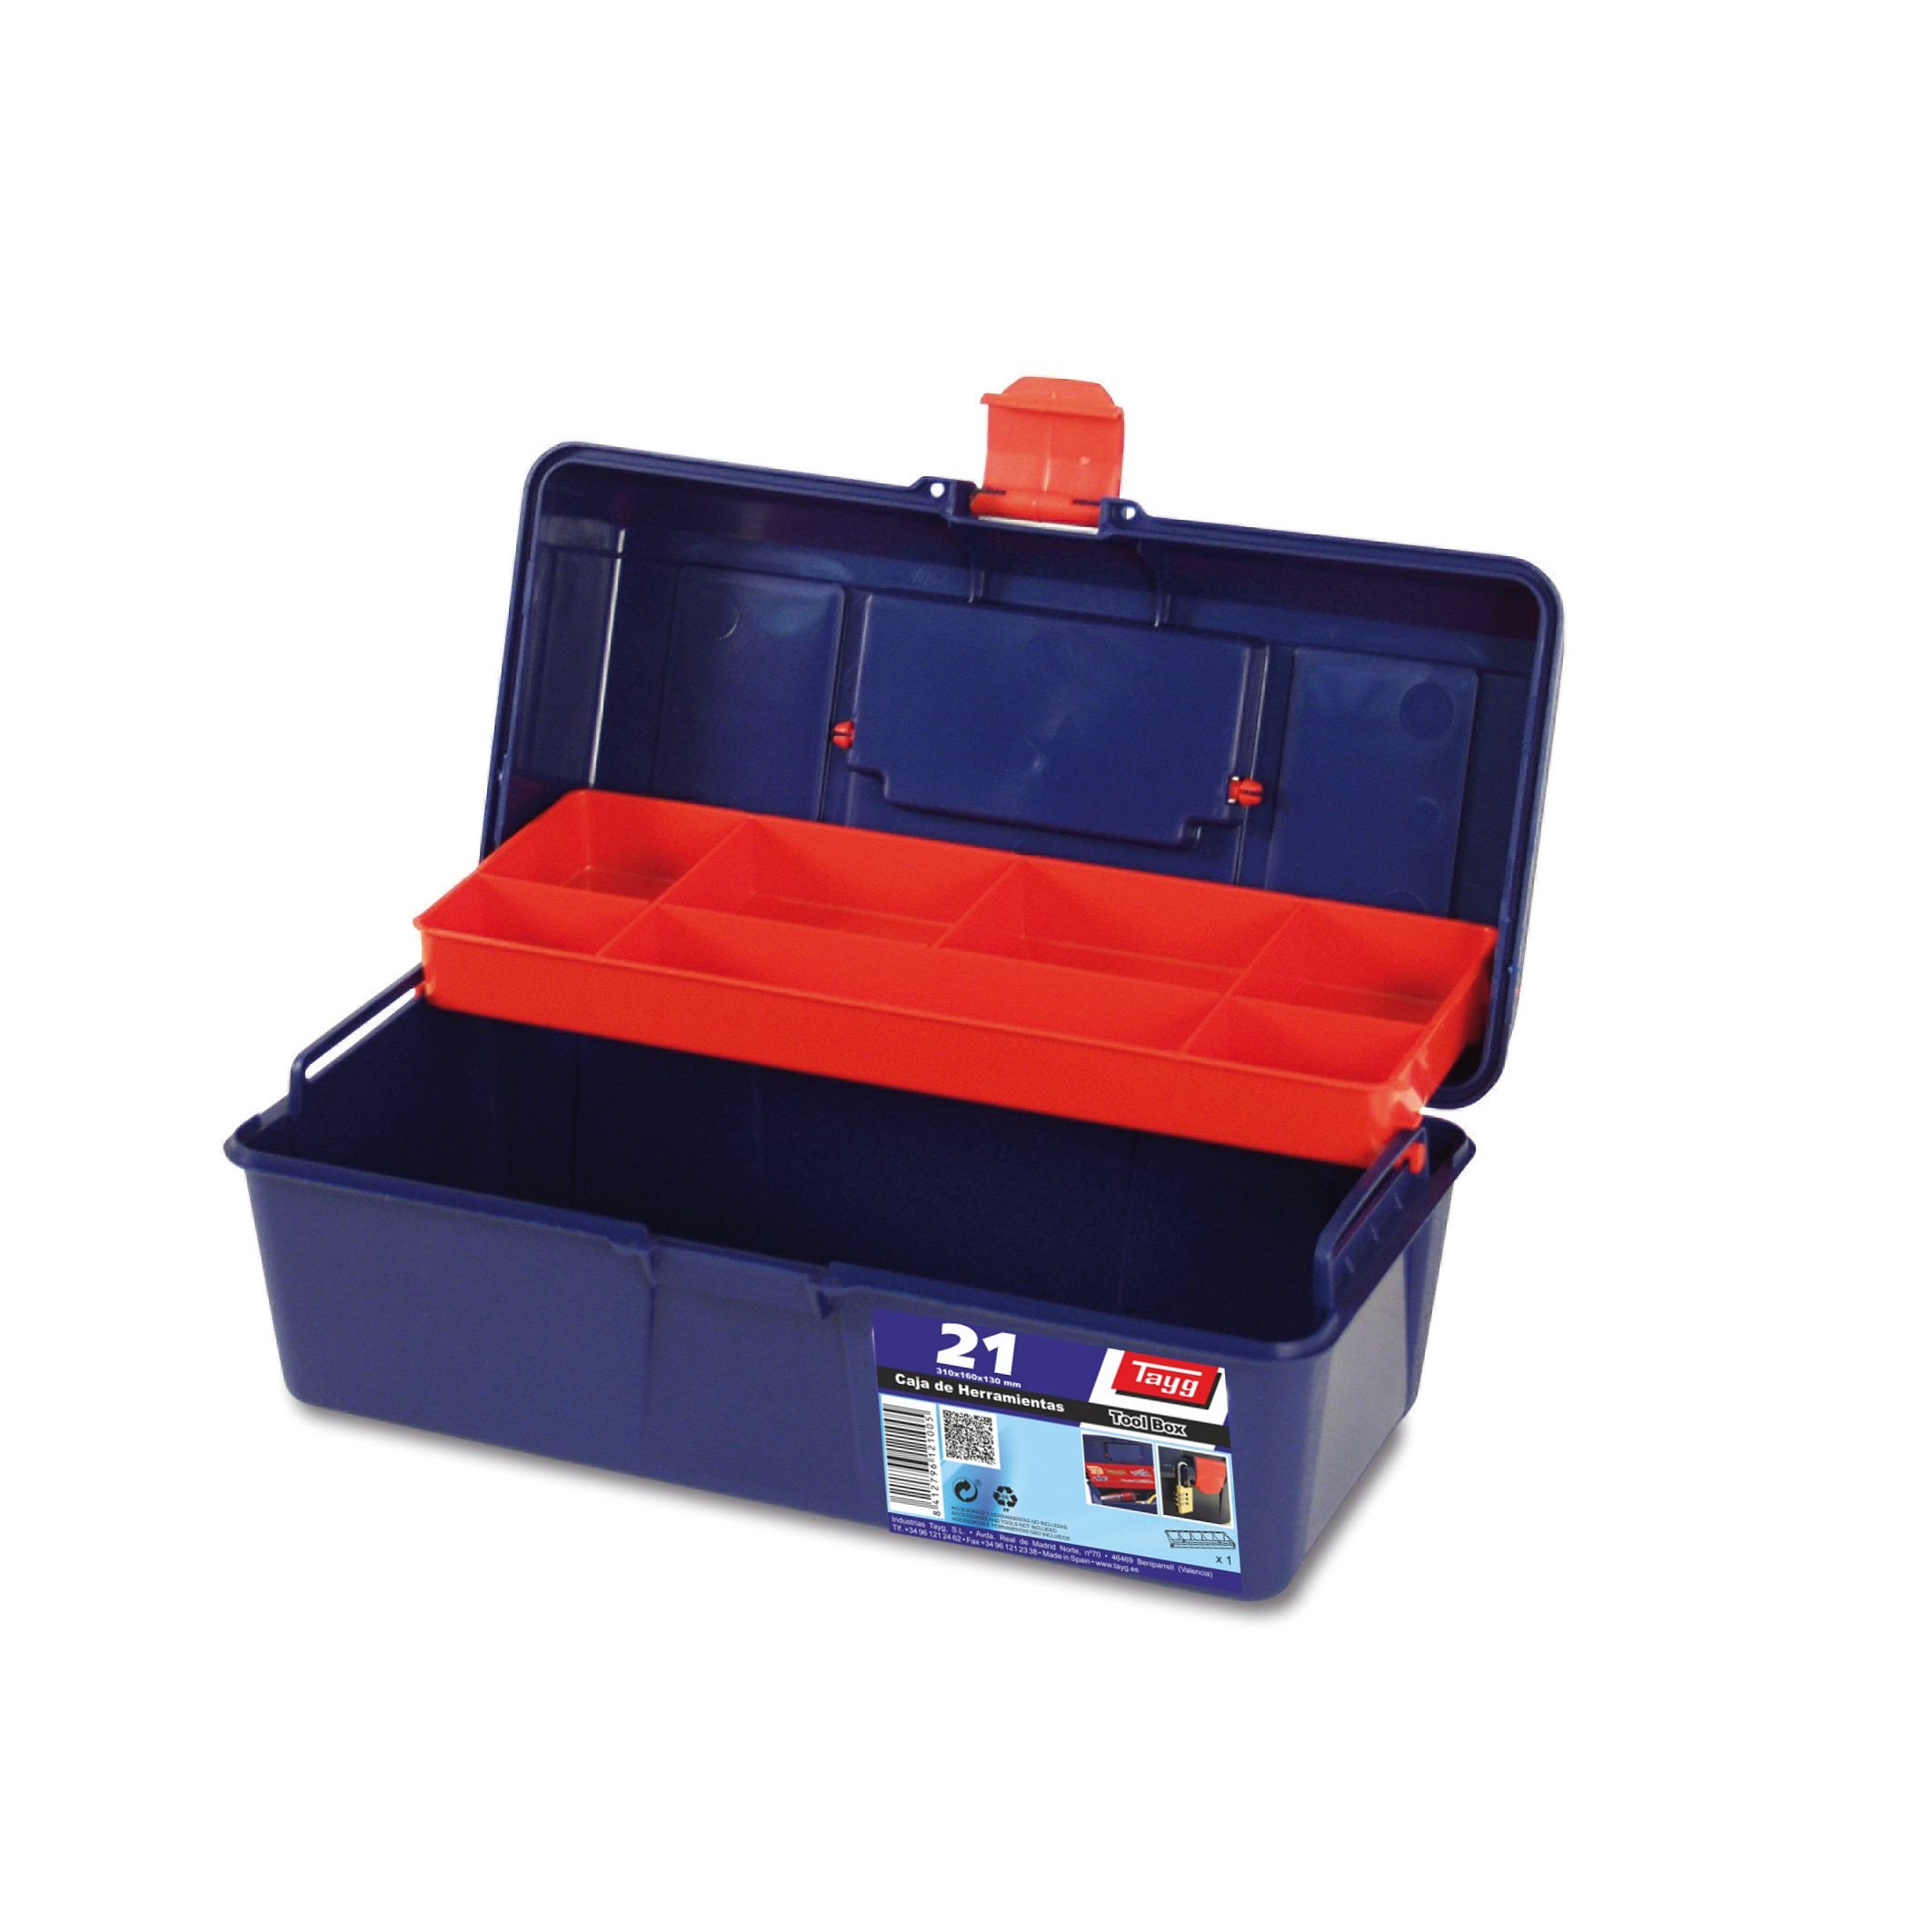 Ящик пластиковий для інструментів Tayg Box 21 Caja htas, 31х16х13 см, синій з червоним (121005) - фото 1